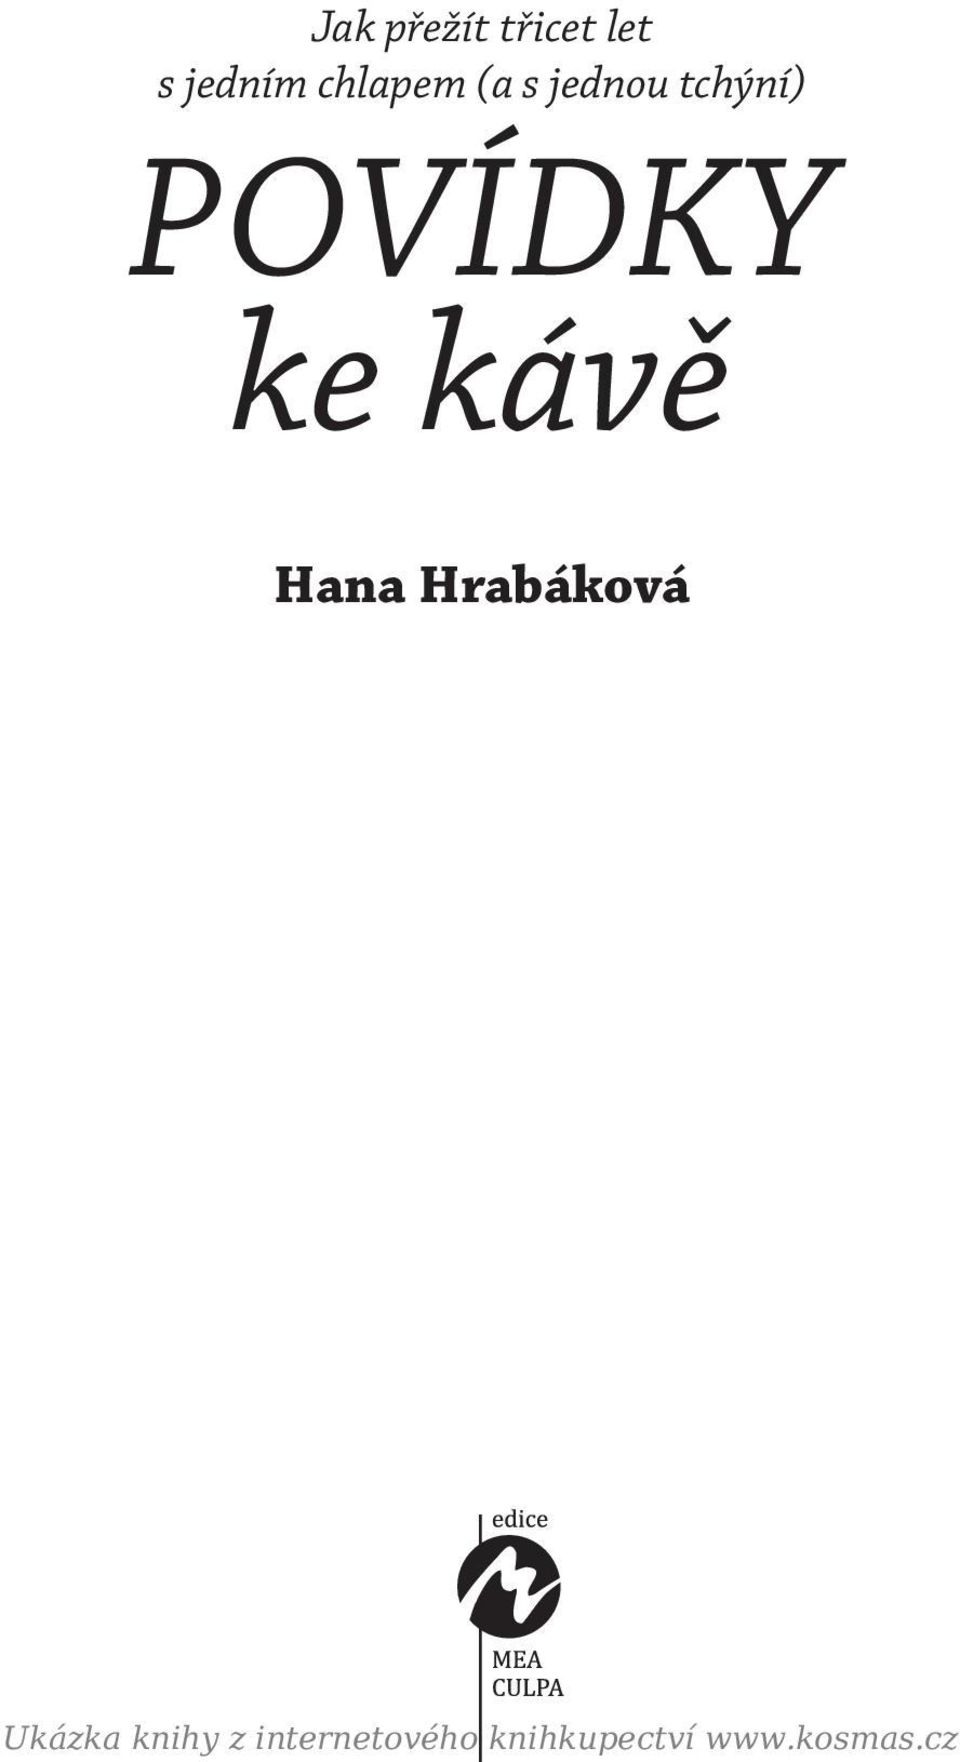 ke kávě Hana Hrabáková Ukázka knihy